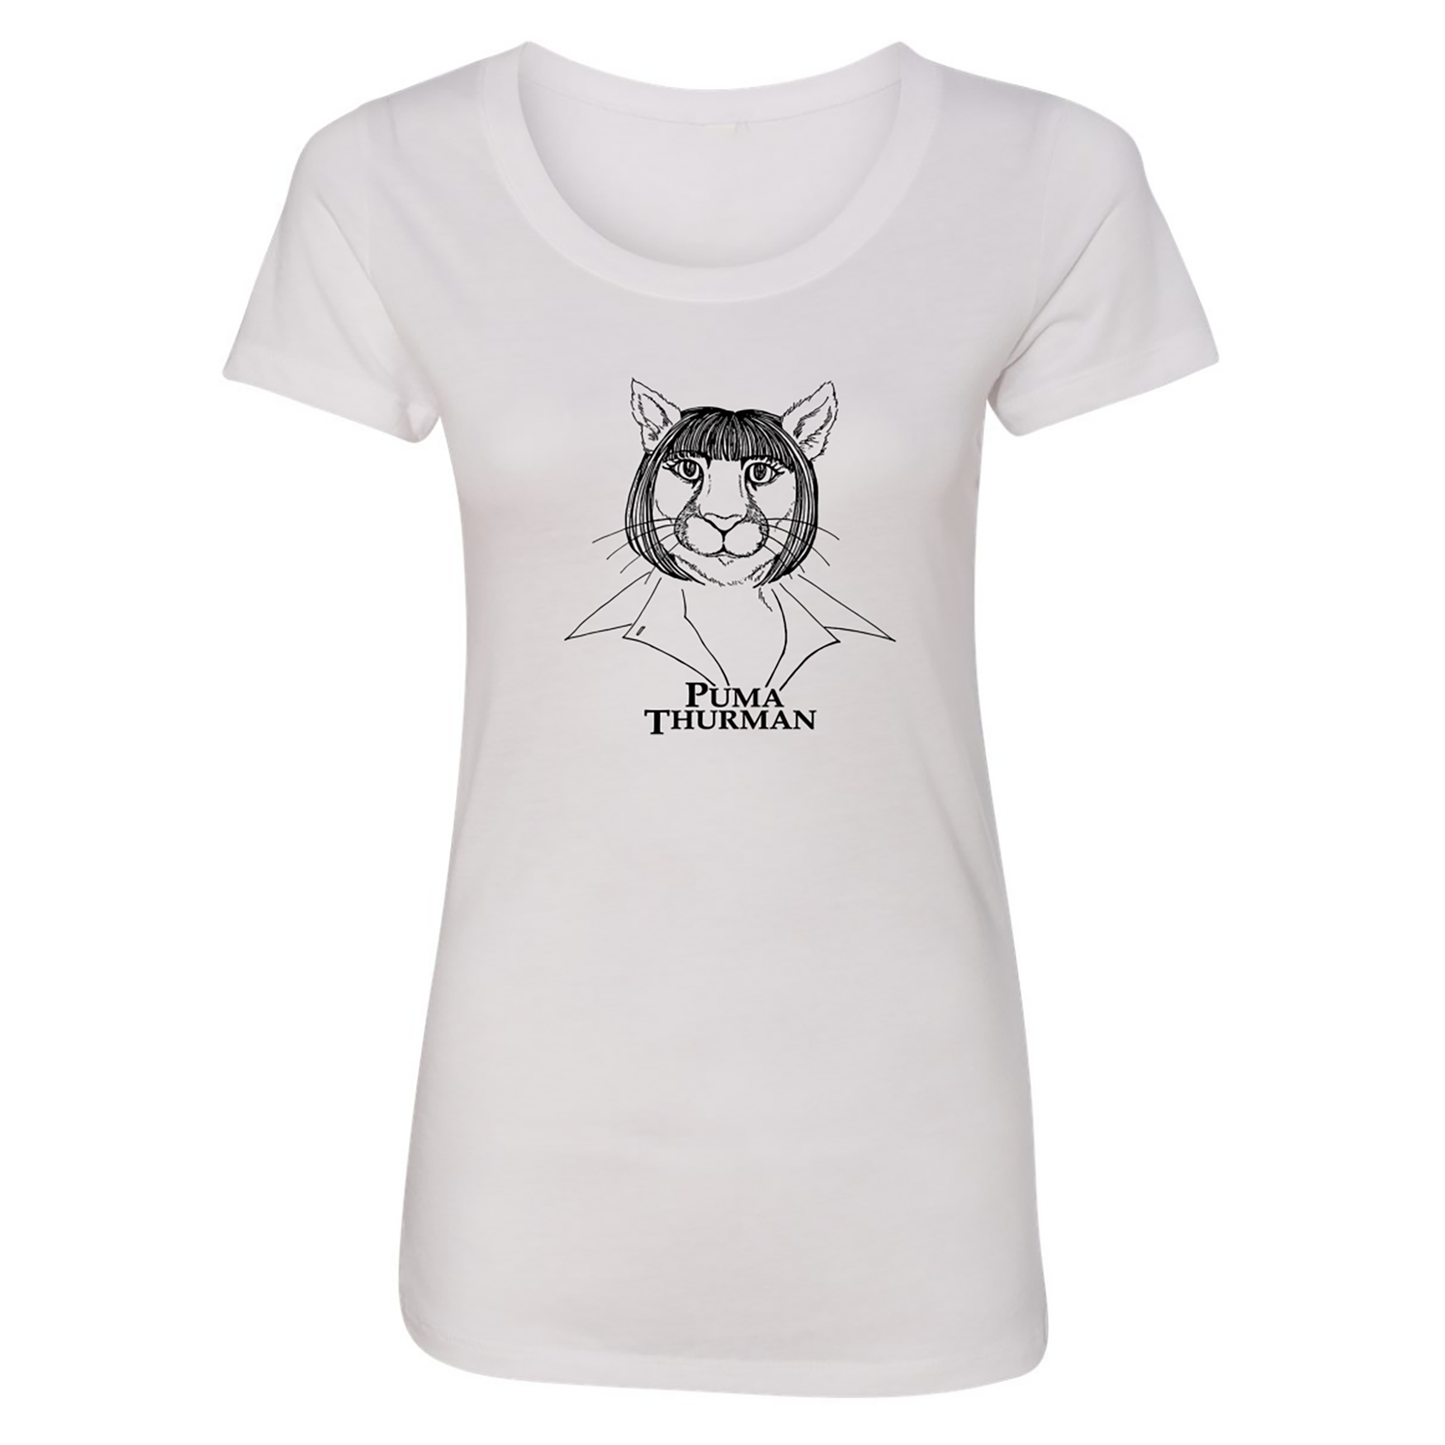 "Puma Thurman" Woman's  T-Shirt